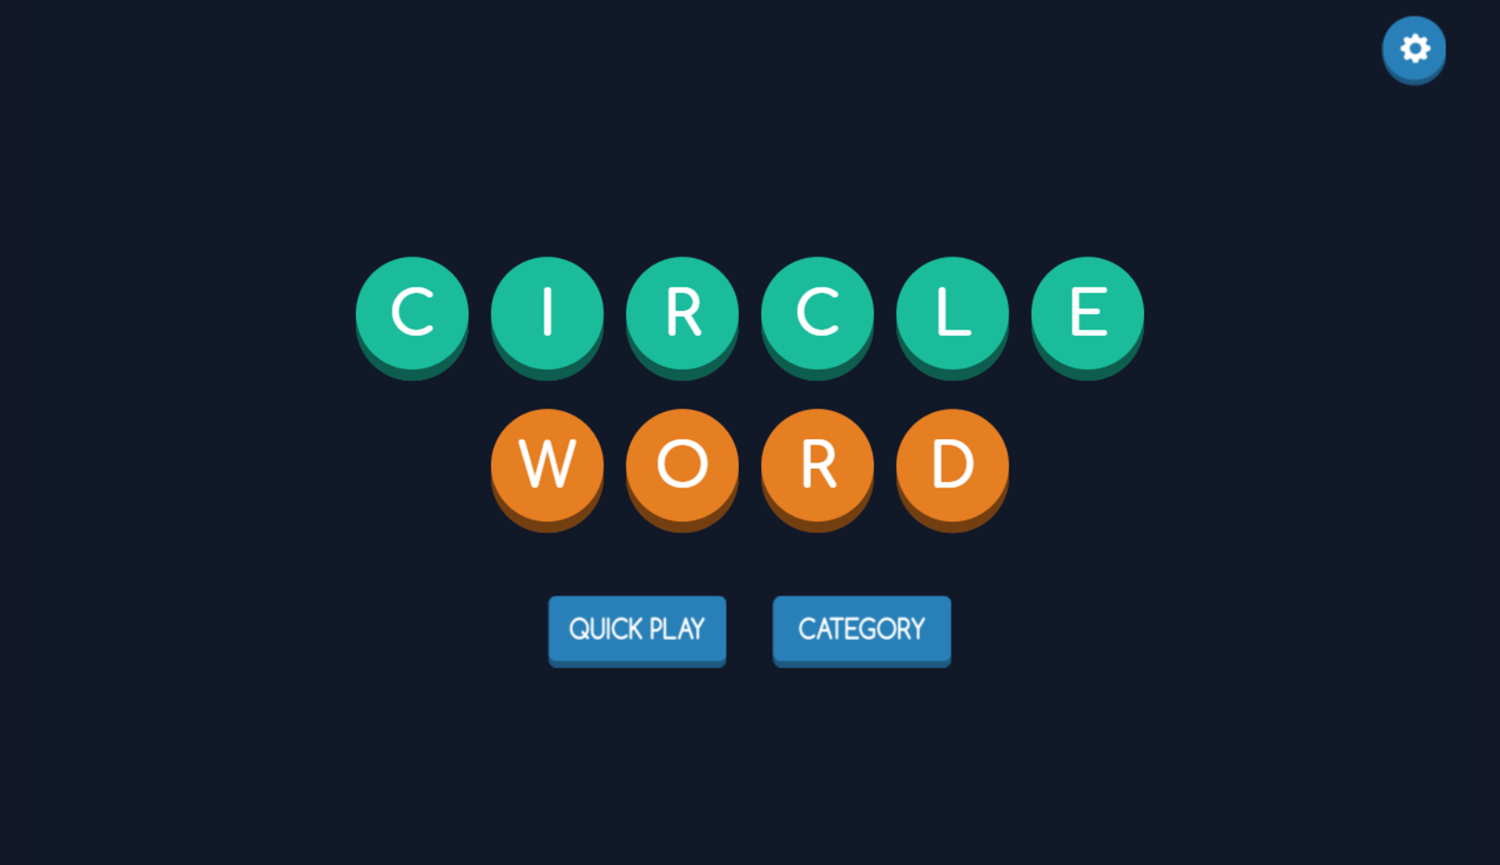 Circle Word Game Welcome Screen Screenshot.